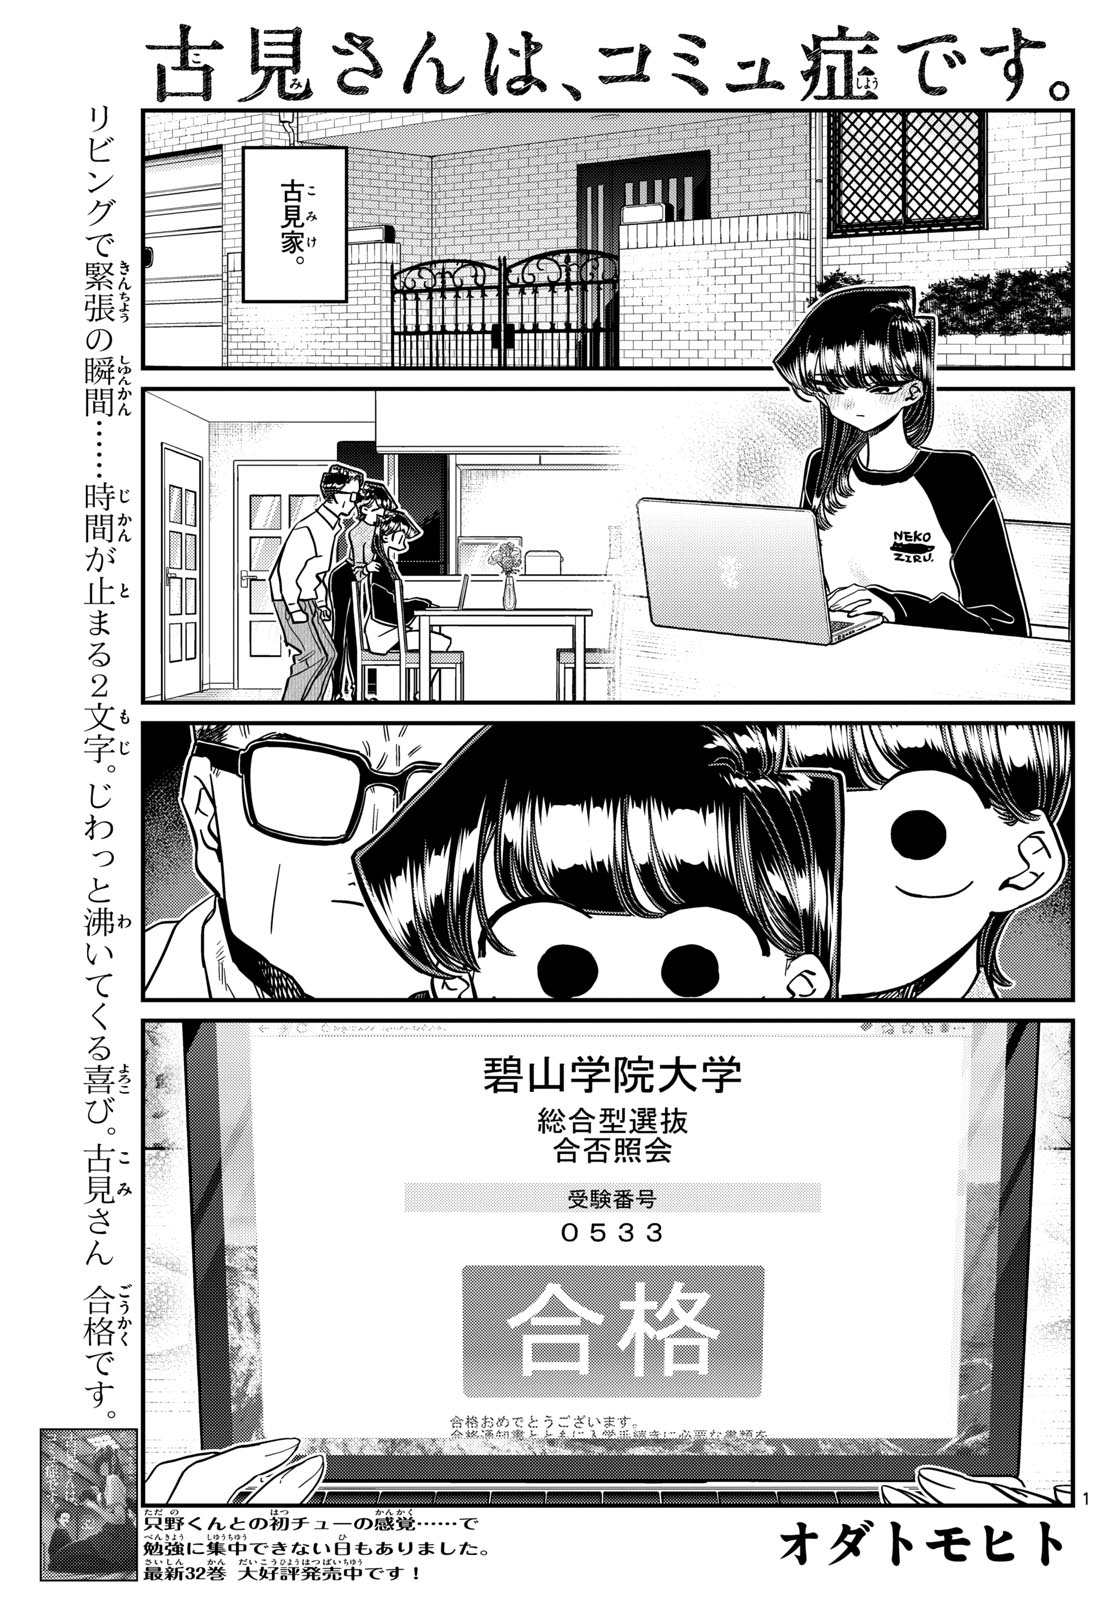 Komi-san wa Komyushou Desu - Chapter 446 - Page 1